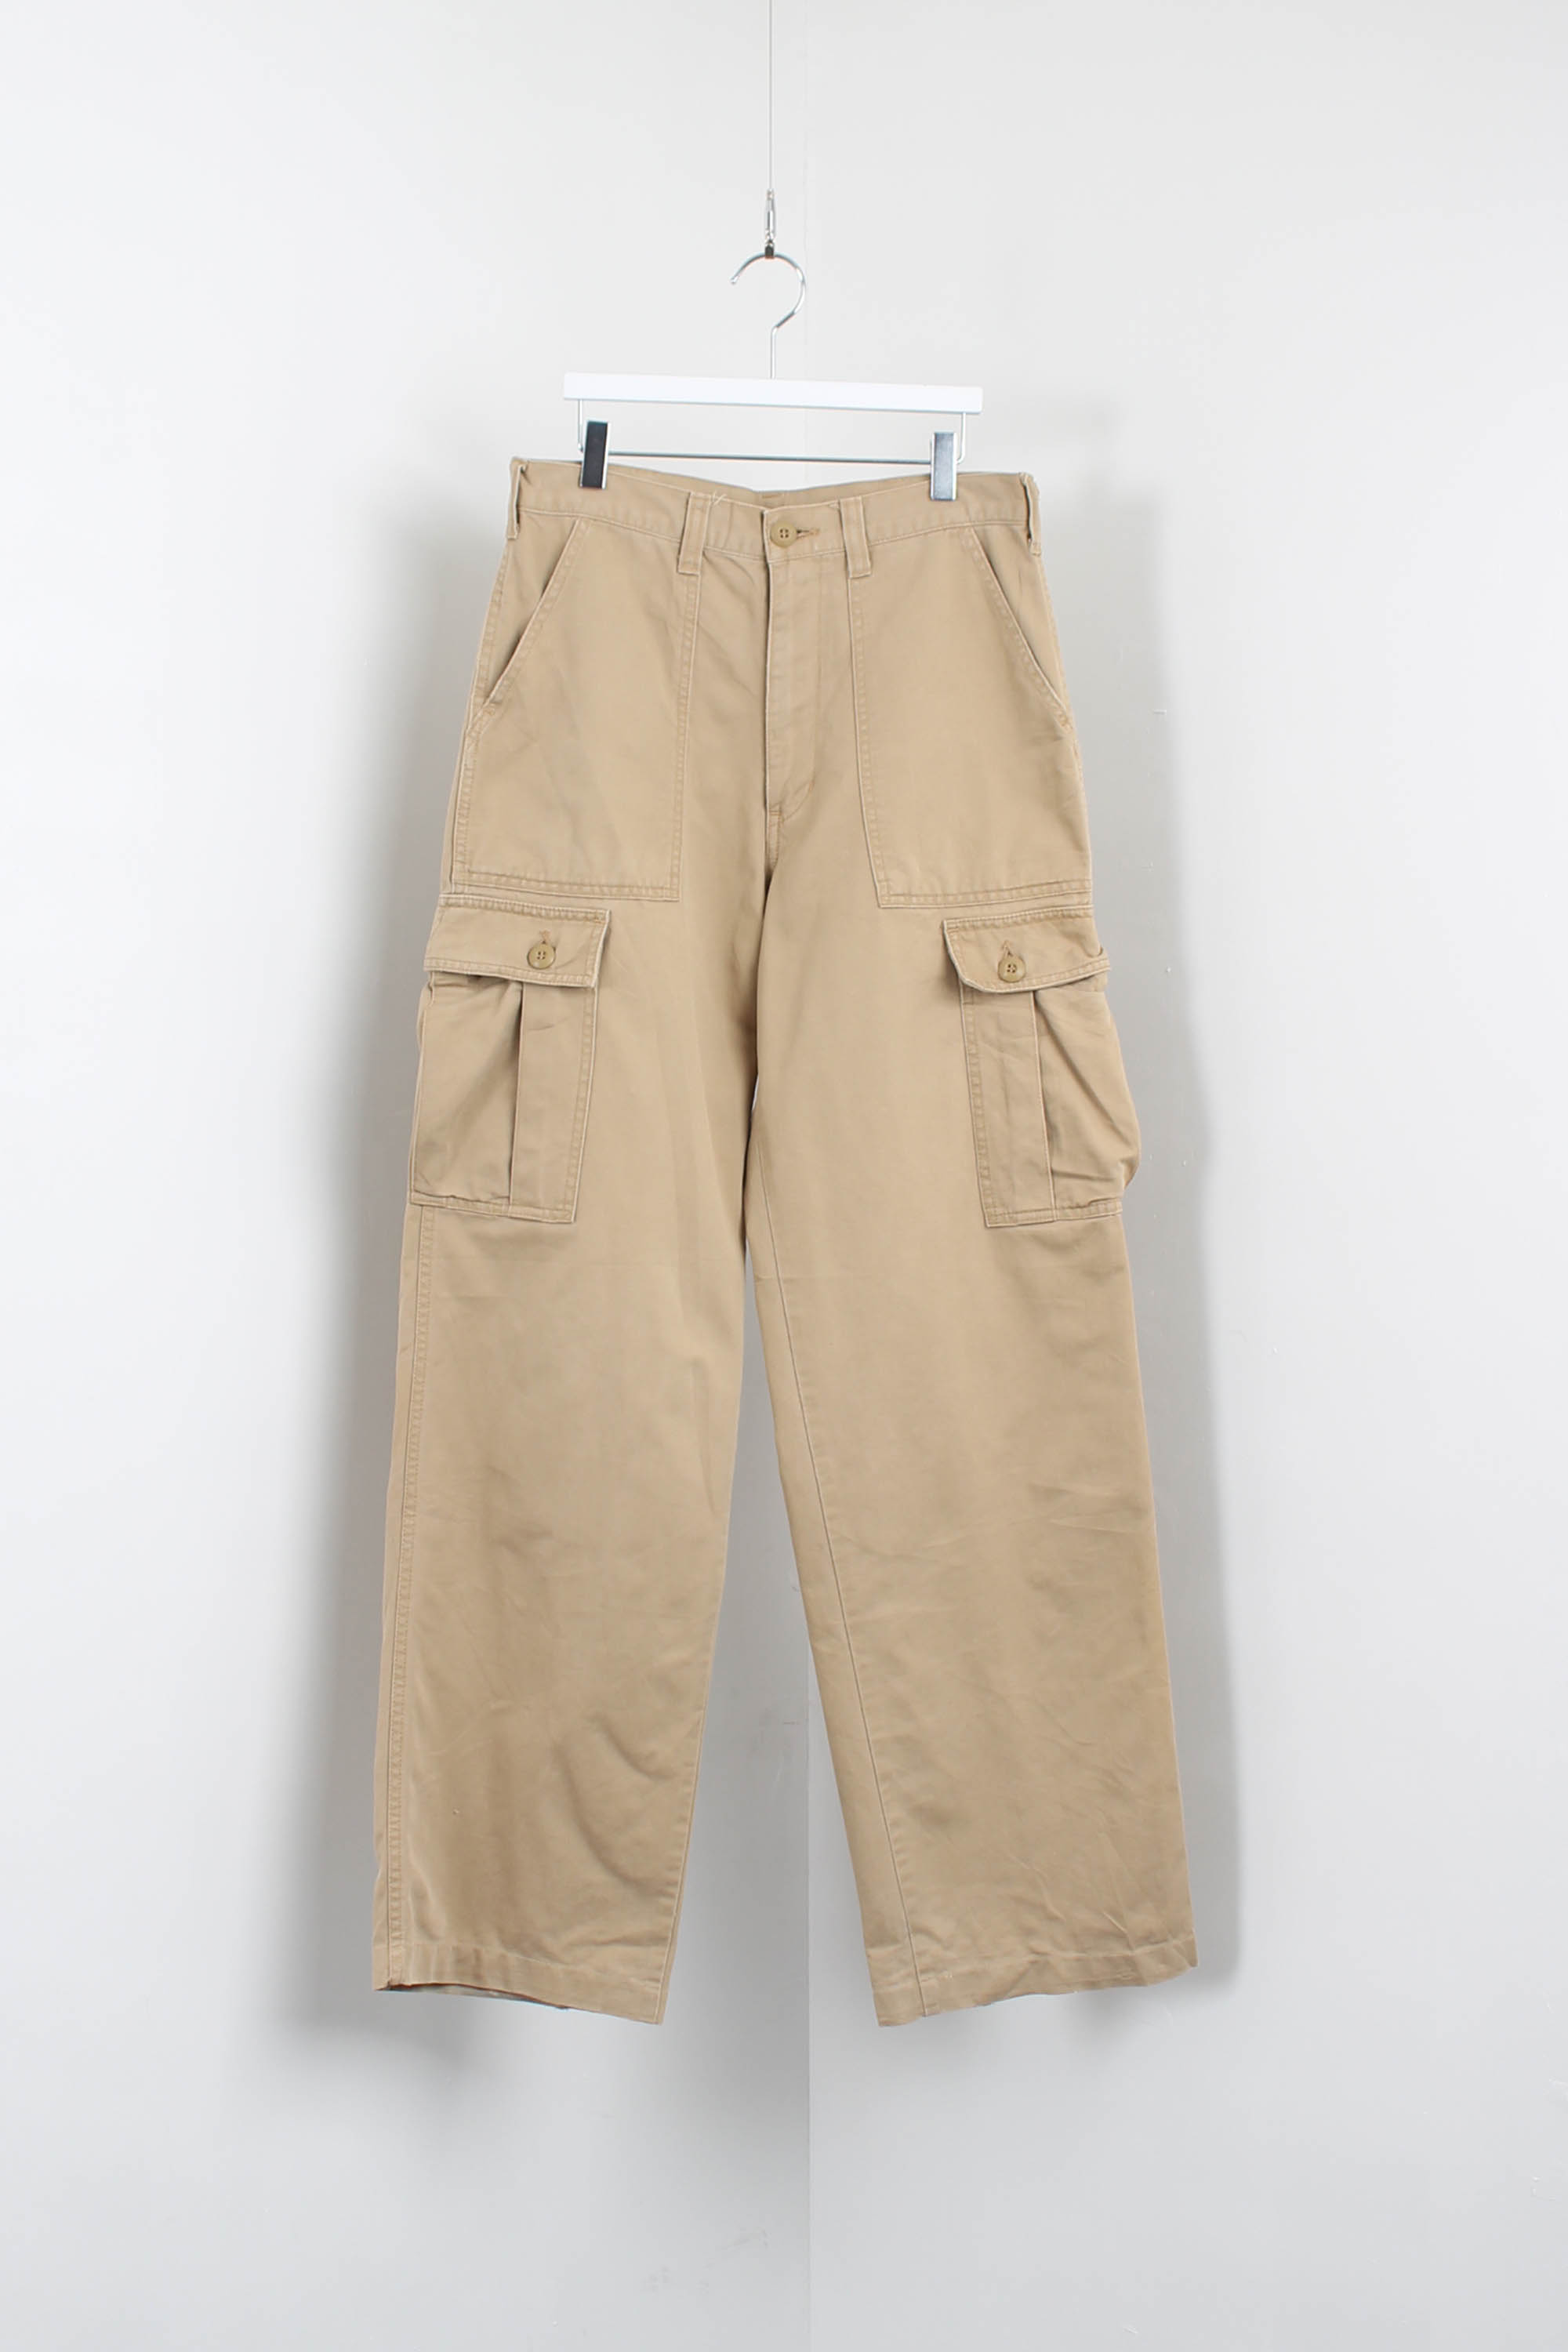 SCHOTT utility pants